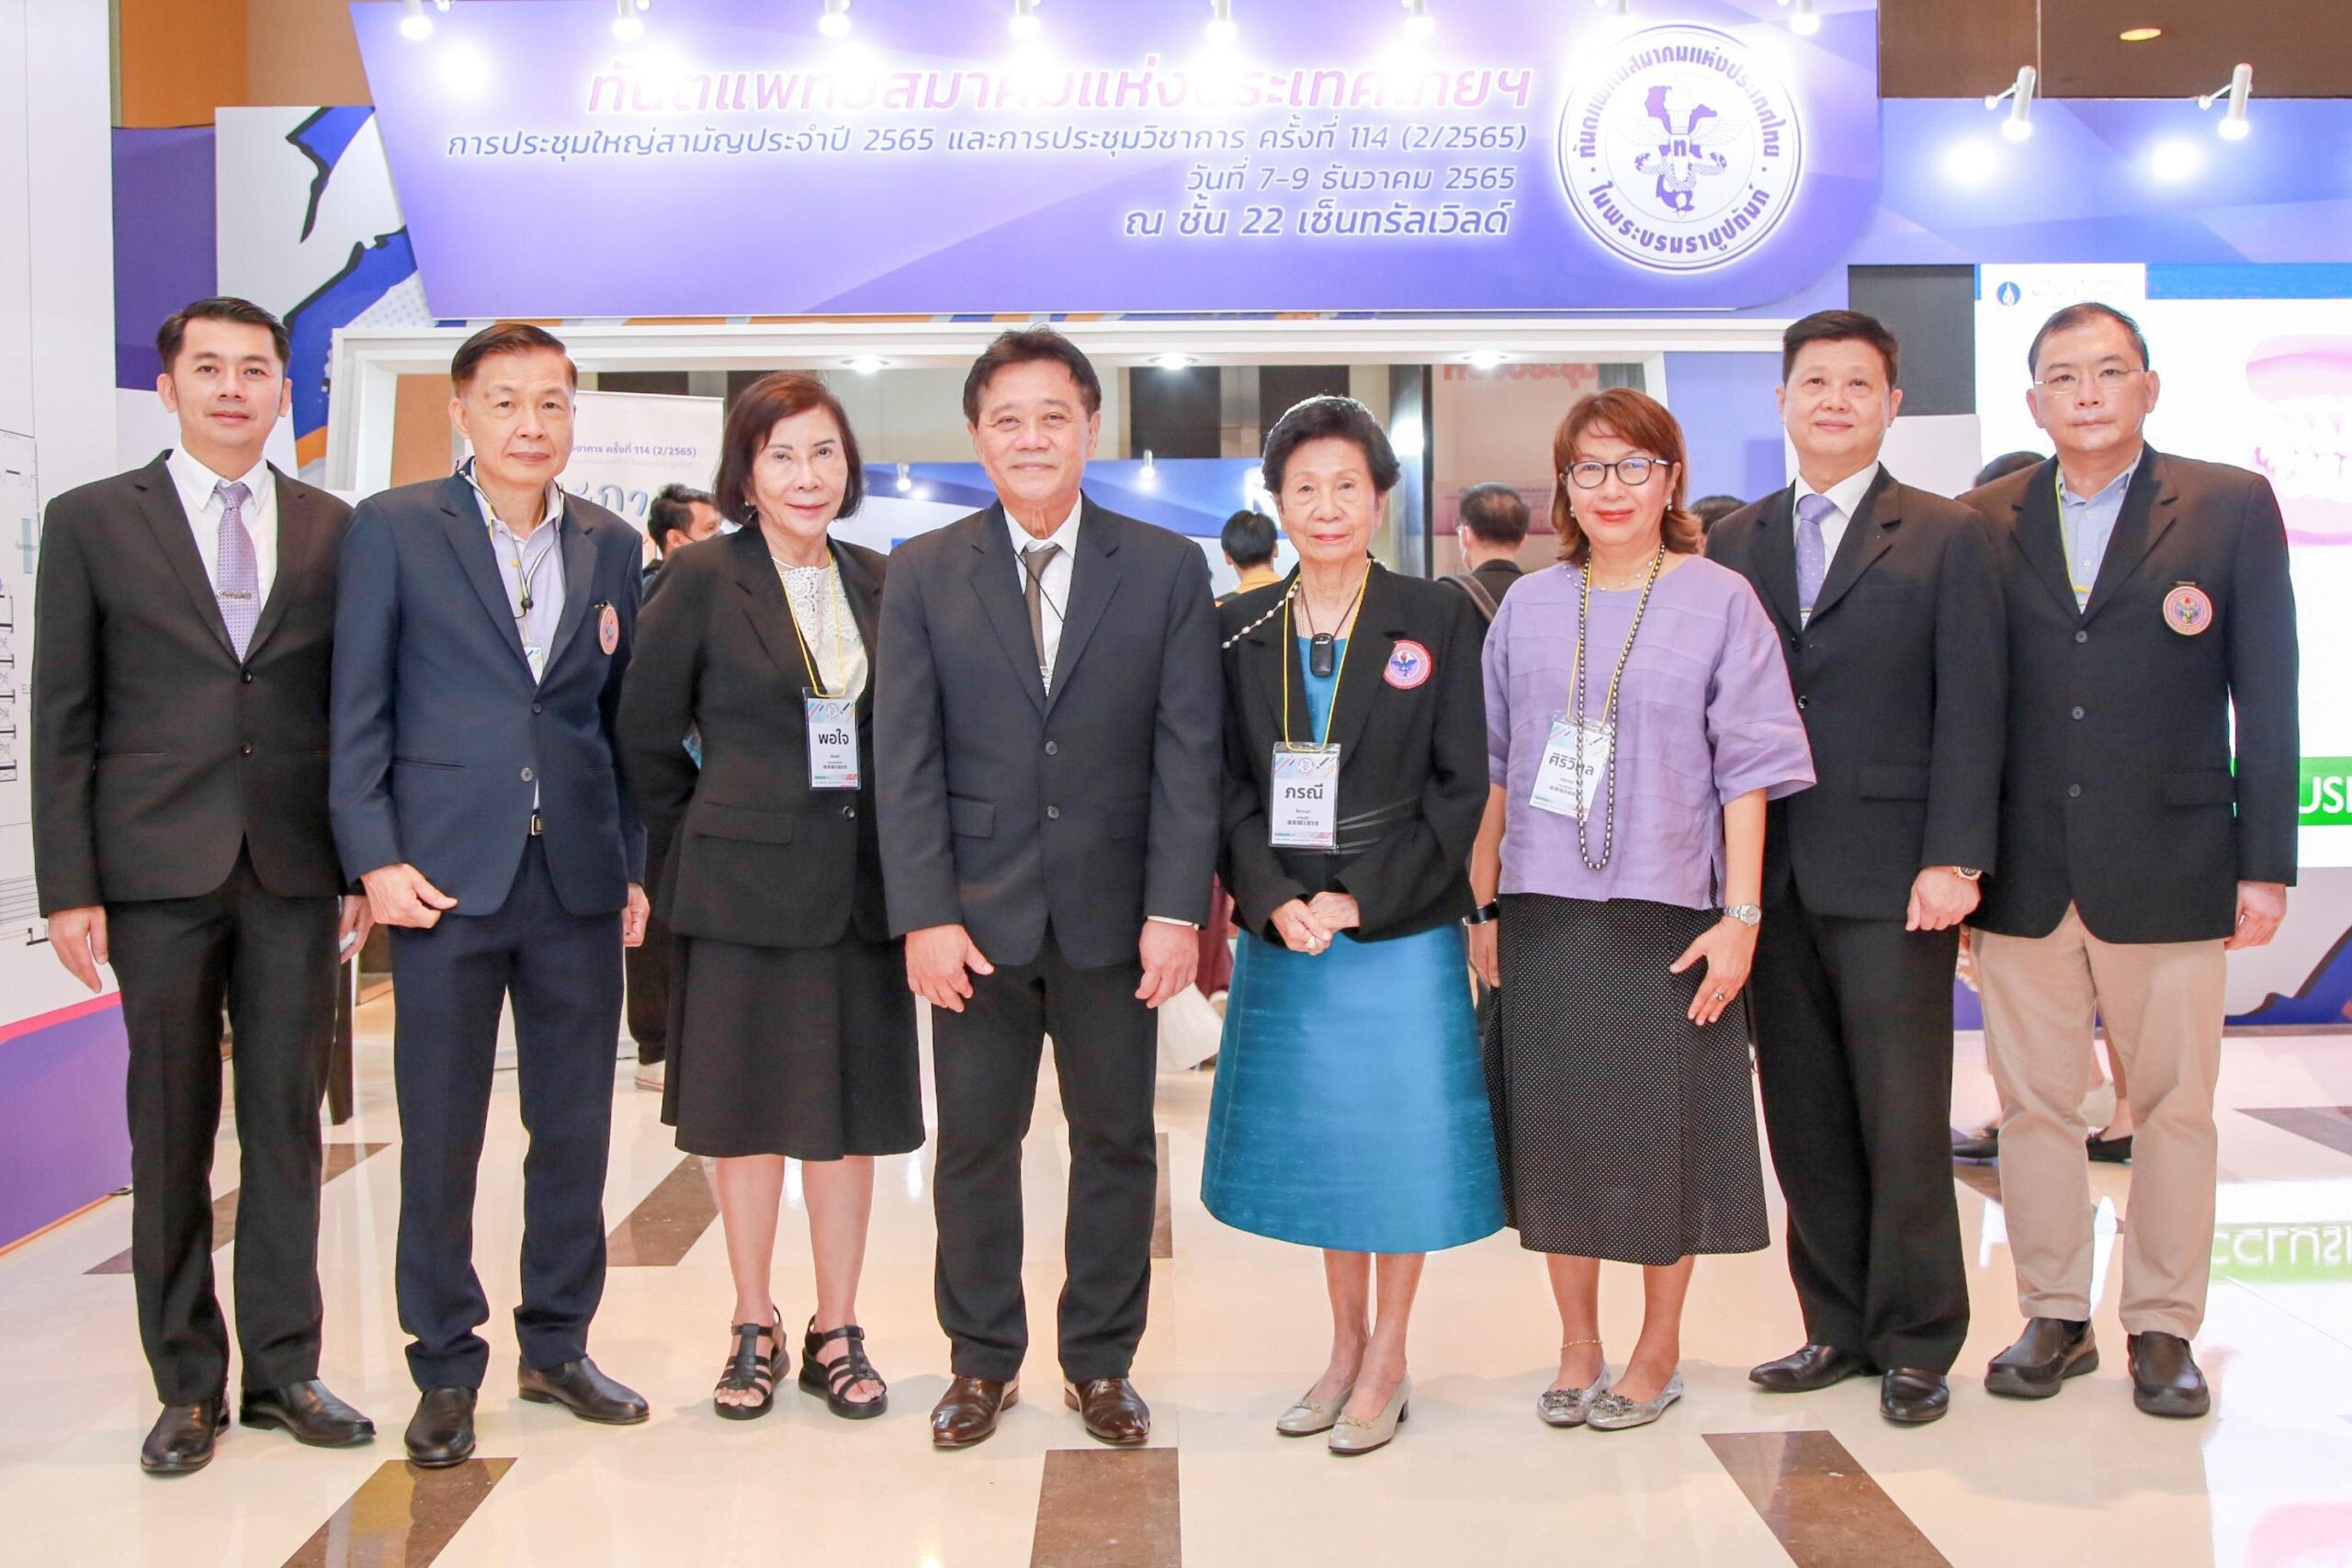 ประชุมวิชาการทันตแพทยสมาคมแห่งประเทศไทย ในพระบรมราชูปถัมภ์ครั้งที่ ครั้งที่ 114 (2/2565) ณ โรงแรมเซ็นทาราแกรนด์ เซ็นทรัลเวิลด์